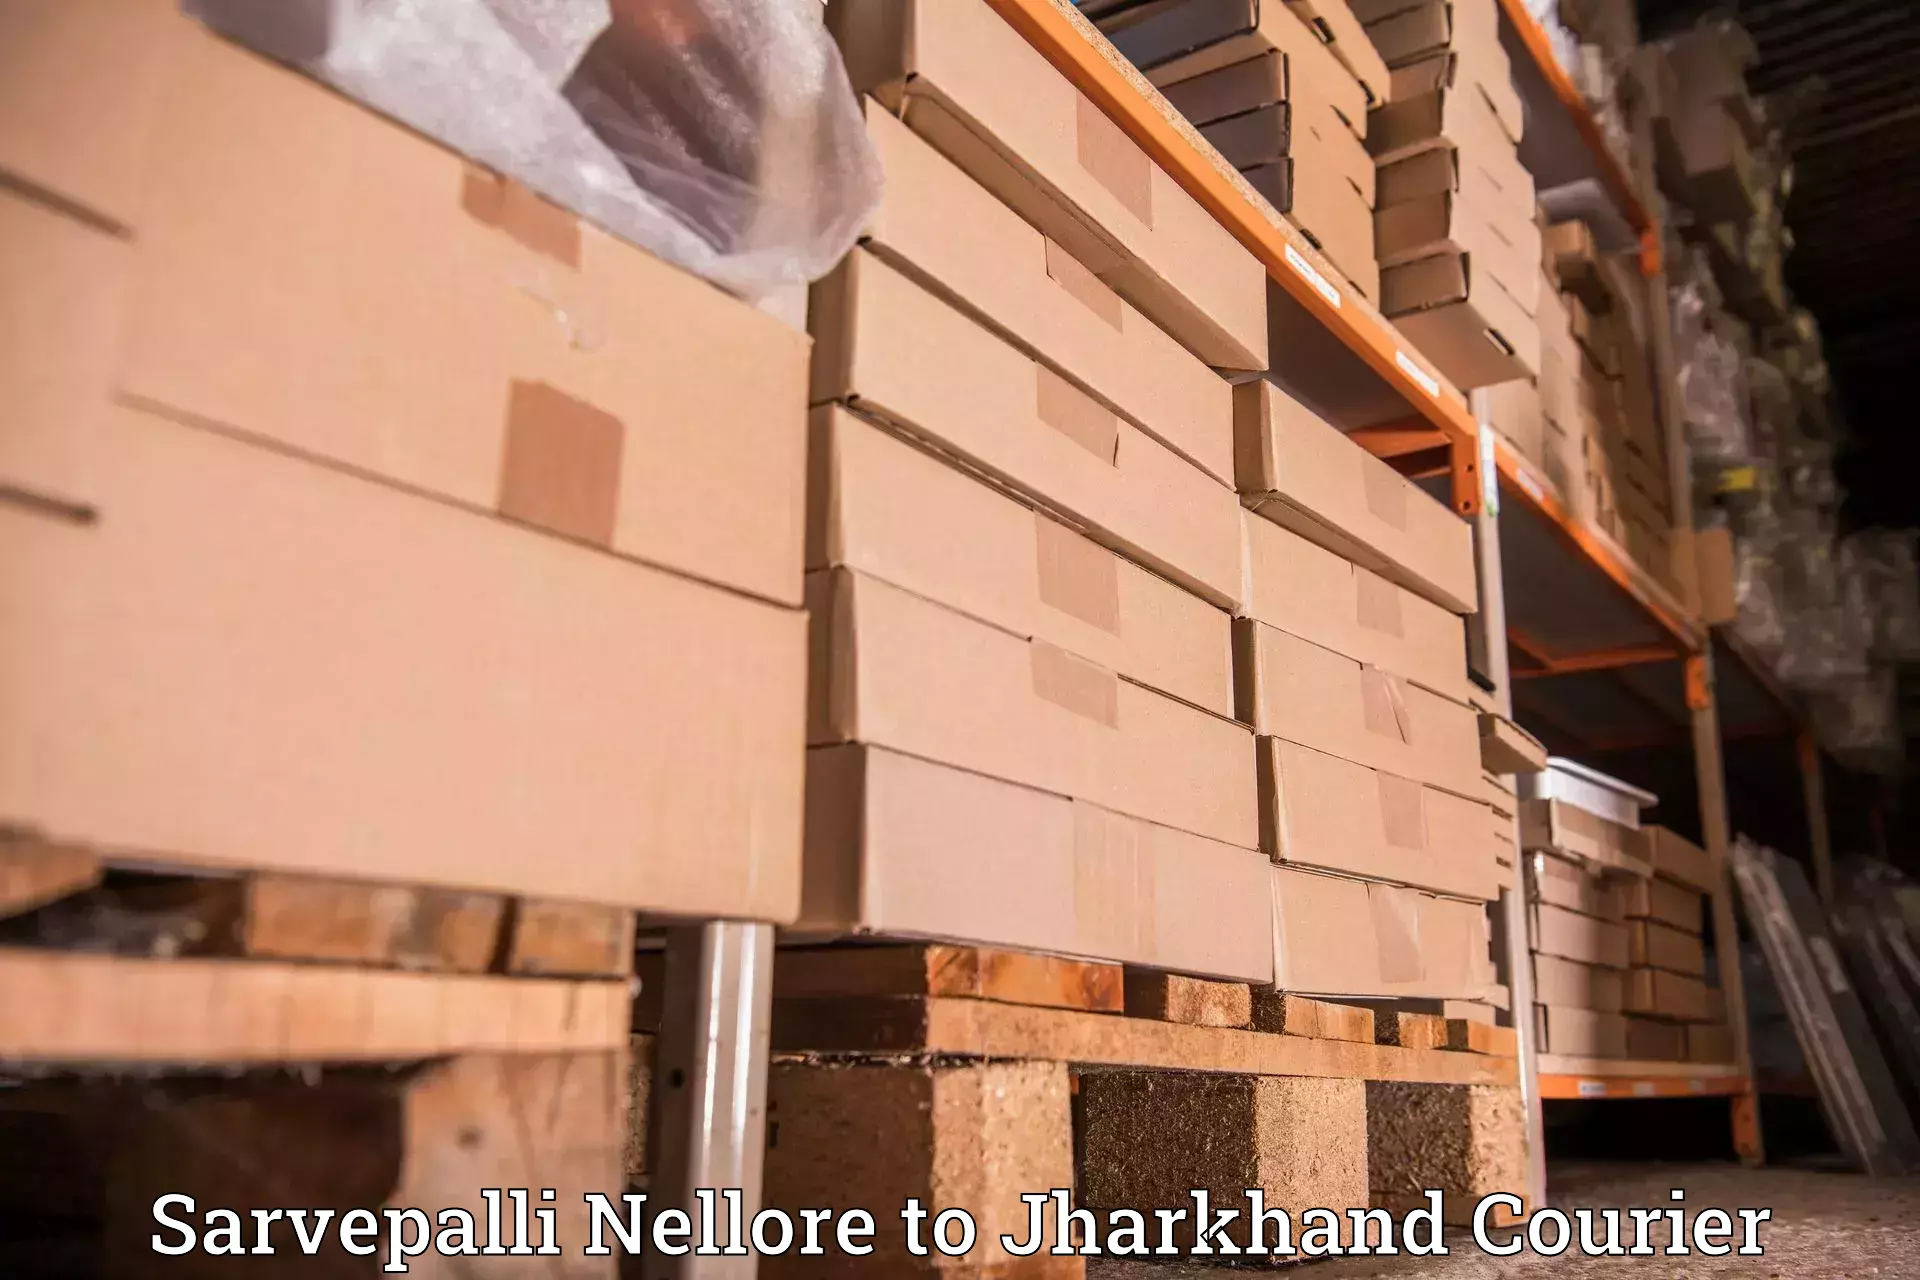 Supply chain delivery in Sarvepalli Nellore to Godda